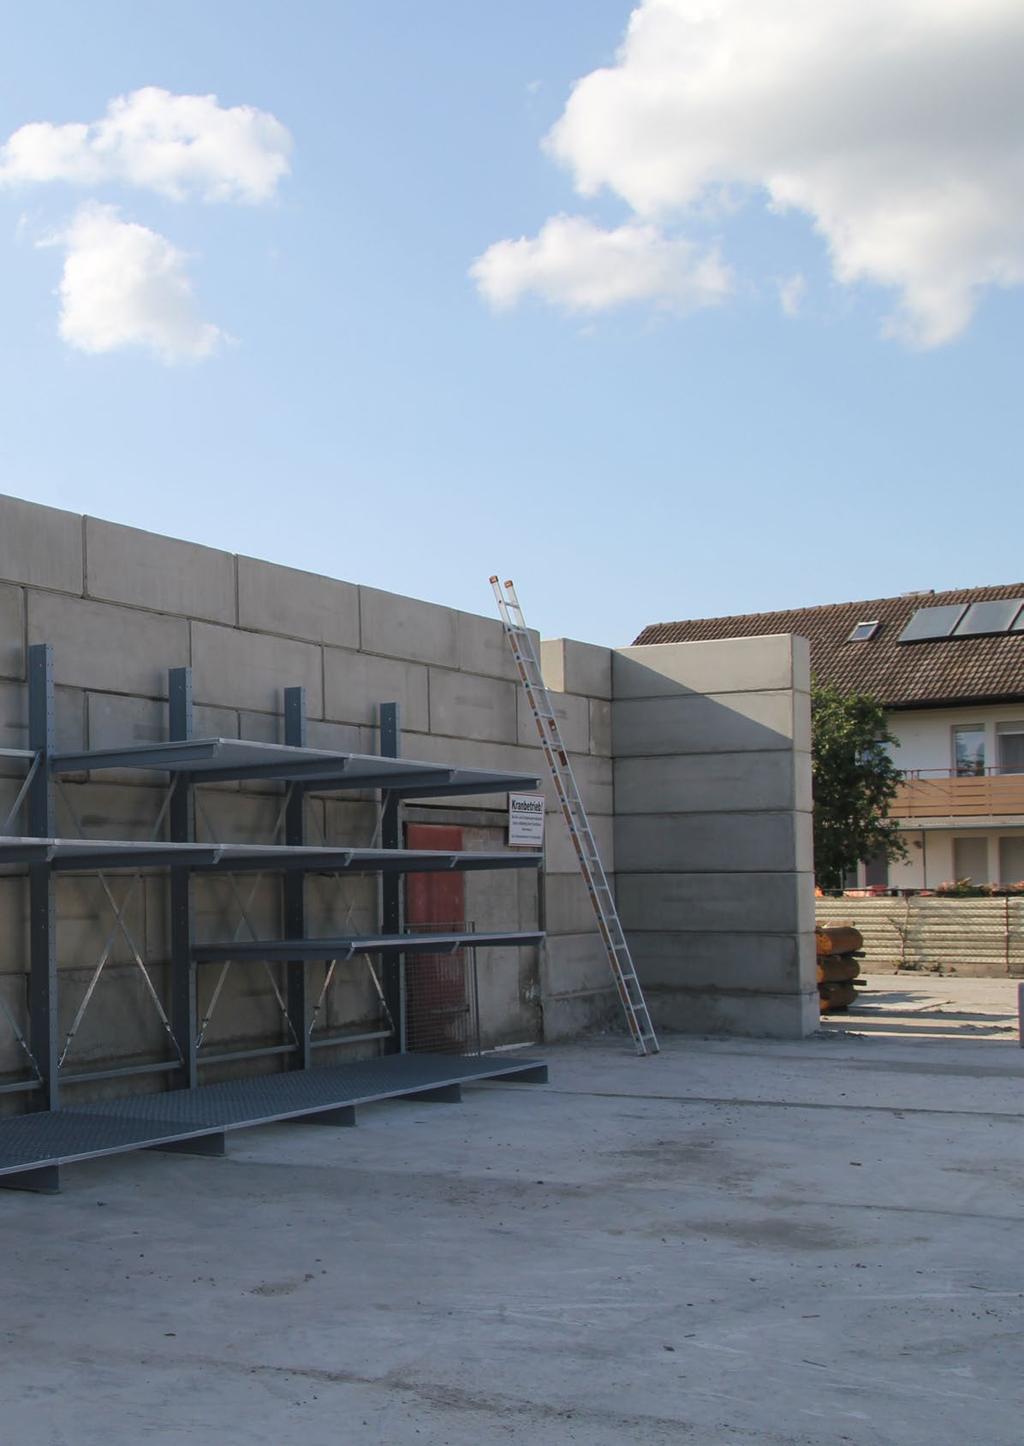 ZBLOCKS BETON-STAPELBLÖCKE Die mobilen Beton-Stapelblöcke von Zuber kommen immer dann zum Einsatz, wenn eine flexible und kostengünstige Lösung für Wand- und Ordnungssysteme benötigt wird.